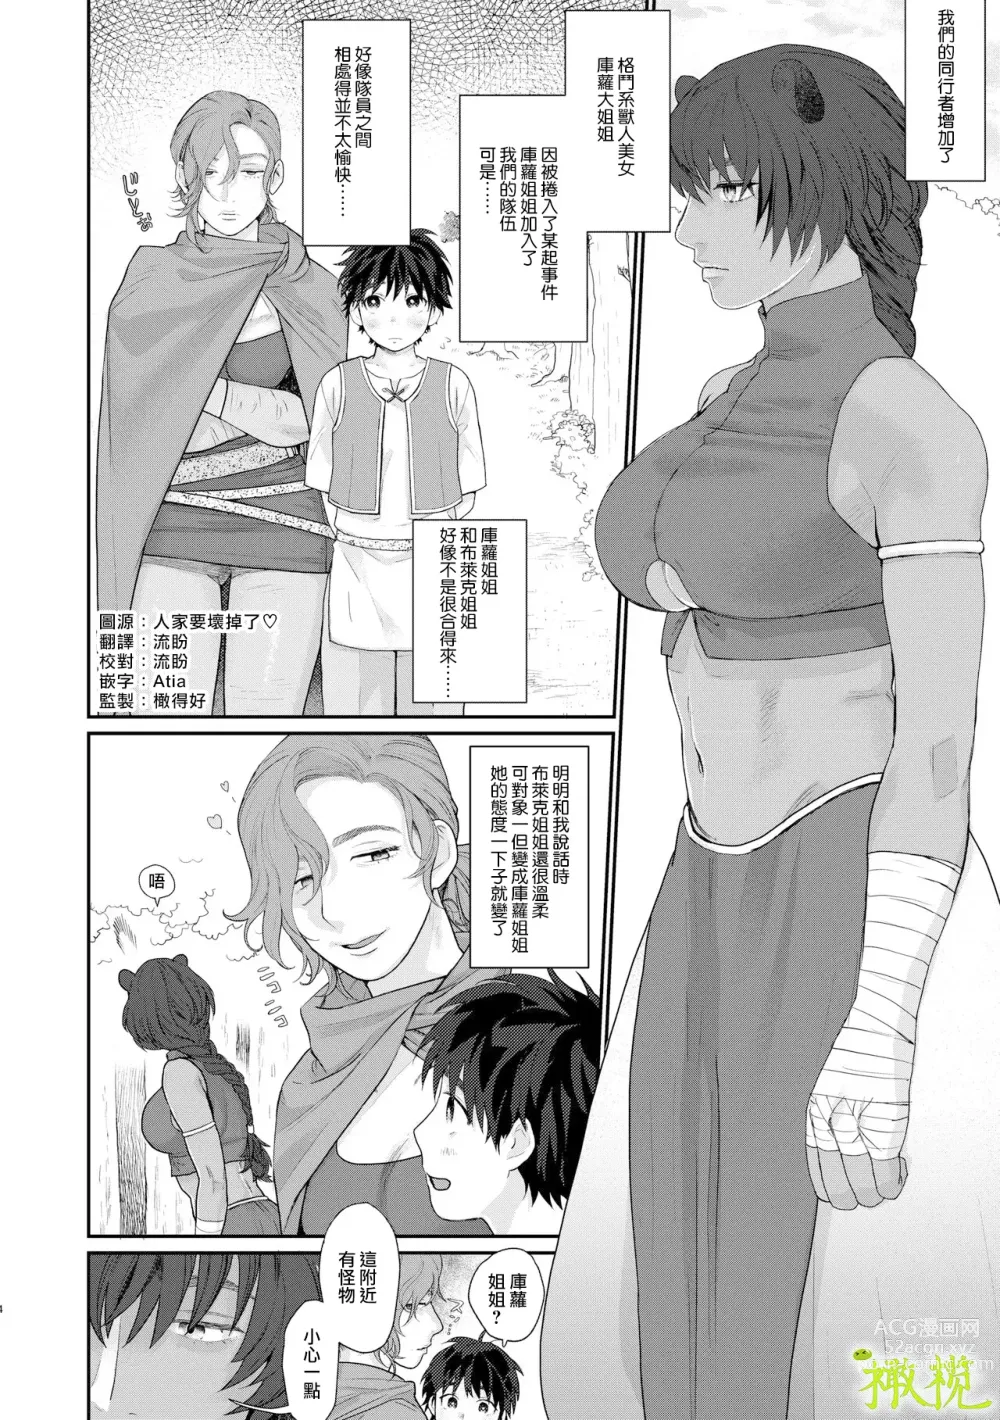 Page 3 of doujinshi 身为男生的我却在穿越到异世界后被同队大姐姐当作雌性疼爱了。2